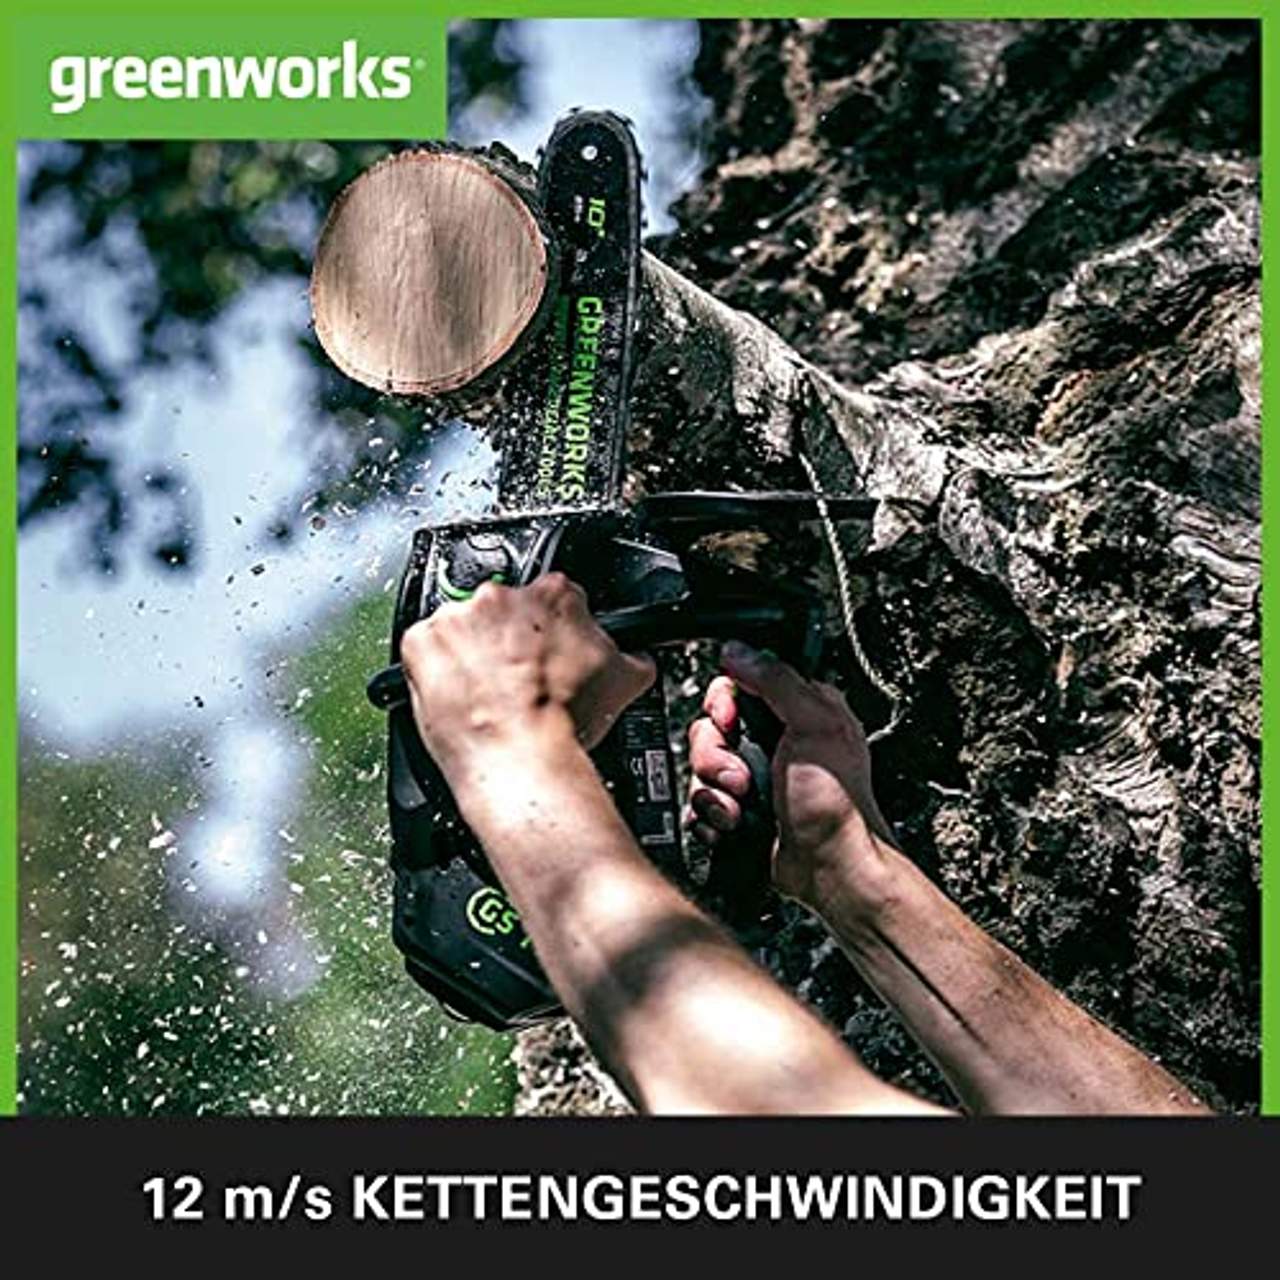 Greenworks 40V 